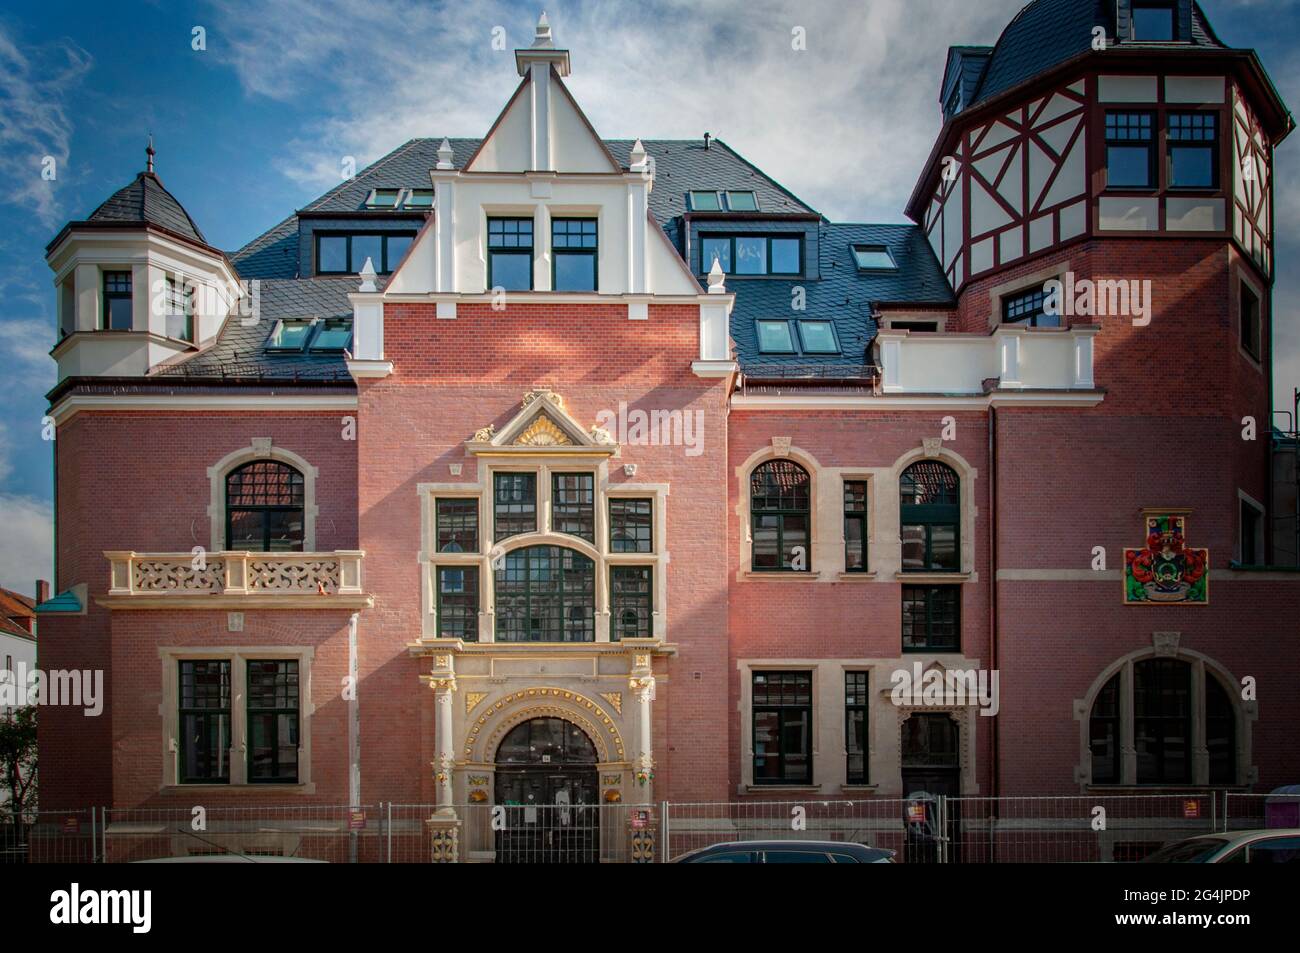 HANOVRE, ALLEMAGNE. 19 JUIN 2021. Bâtiment de style allemand traditionnel, fachwerk, mur prussien. Belle vue sur la ville allemande avec un architecture typique Banque D'Images